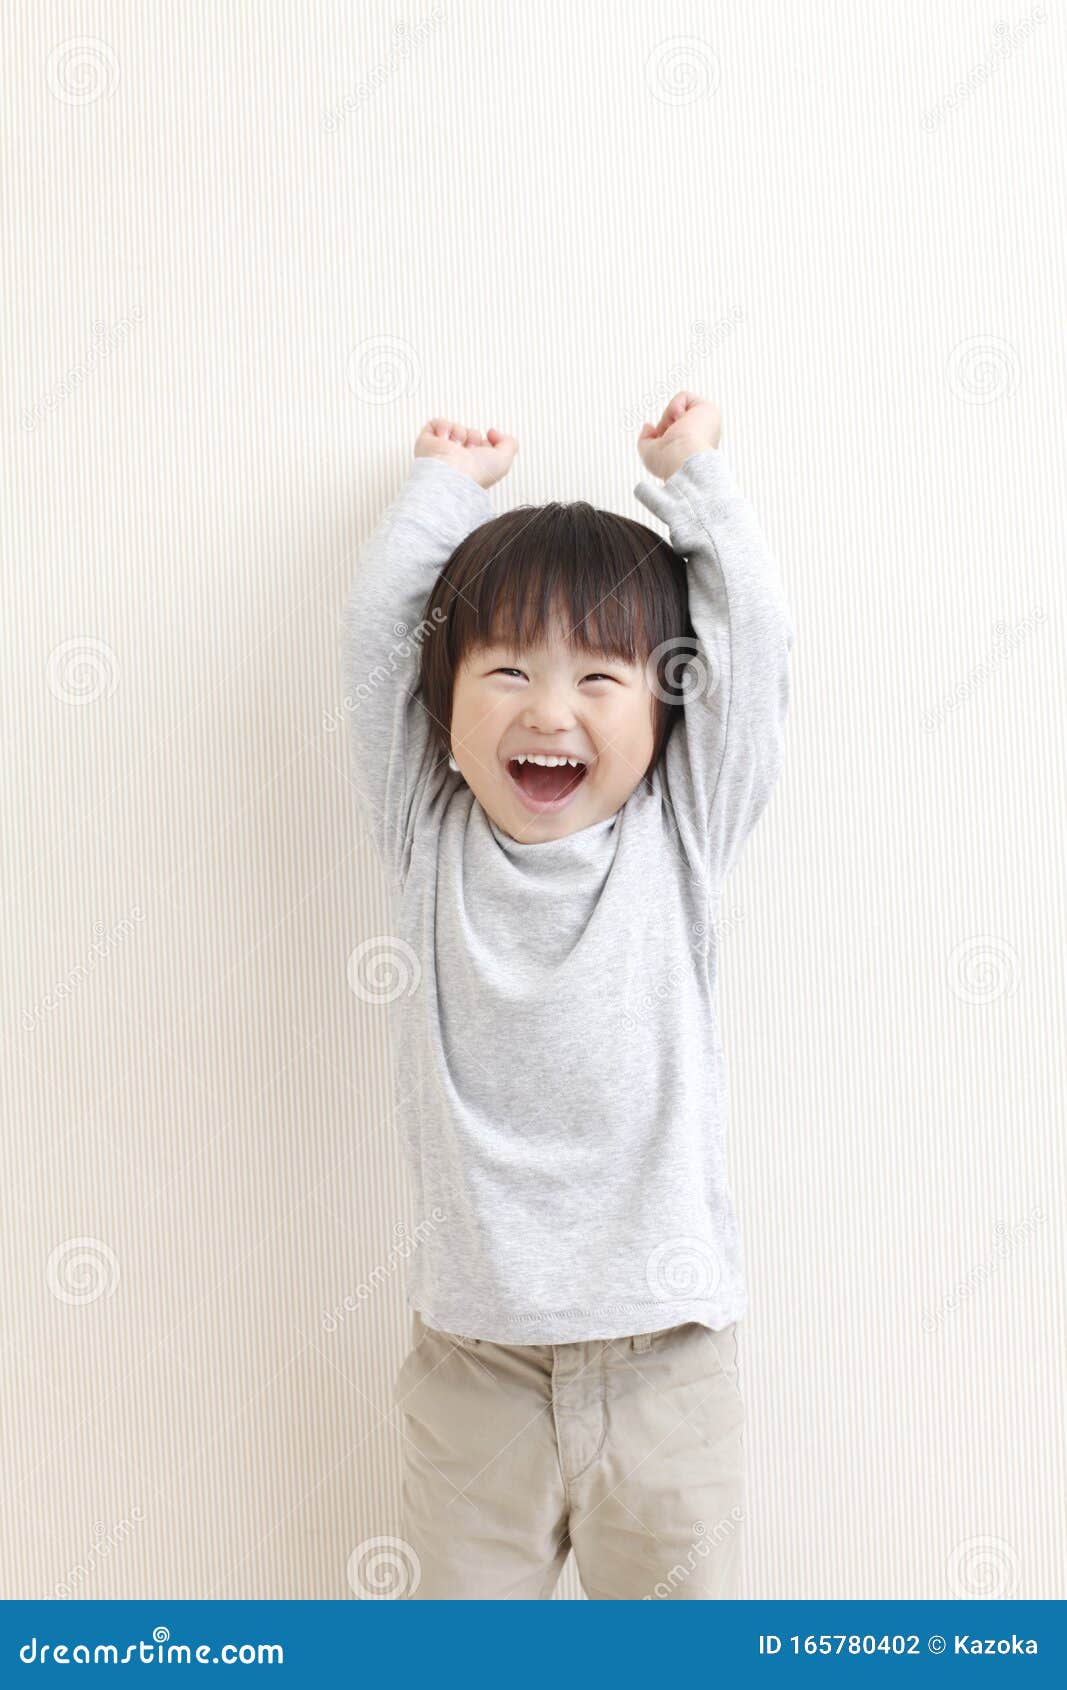 幼儿园制服的日本男孩 库存图片. 图片 包括有 幼稚园, 日语, 帽子, 男人, 男性, 小孩, 微笑 - 101373547